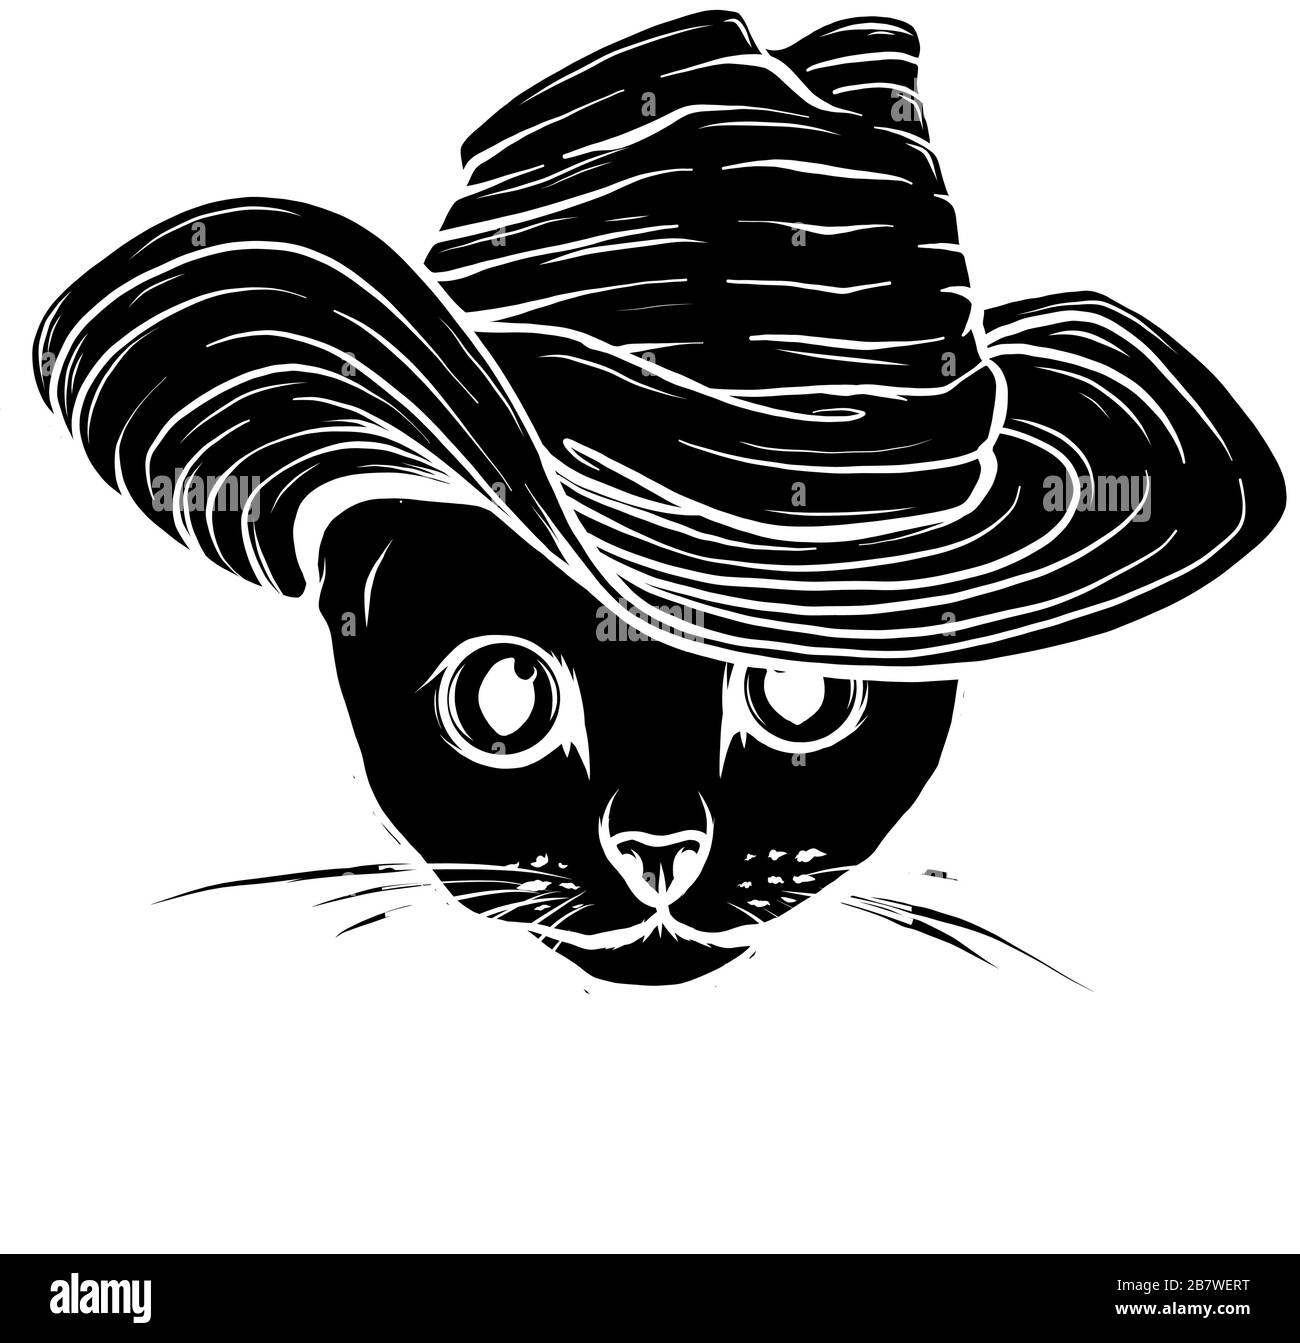 Silueta negra de la cabeza del gato. Ilustración vectorial. Ilustración del Vector